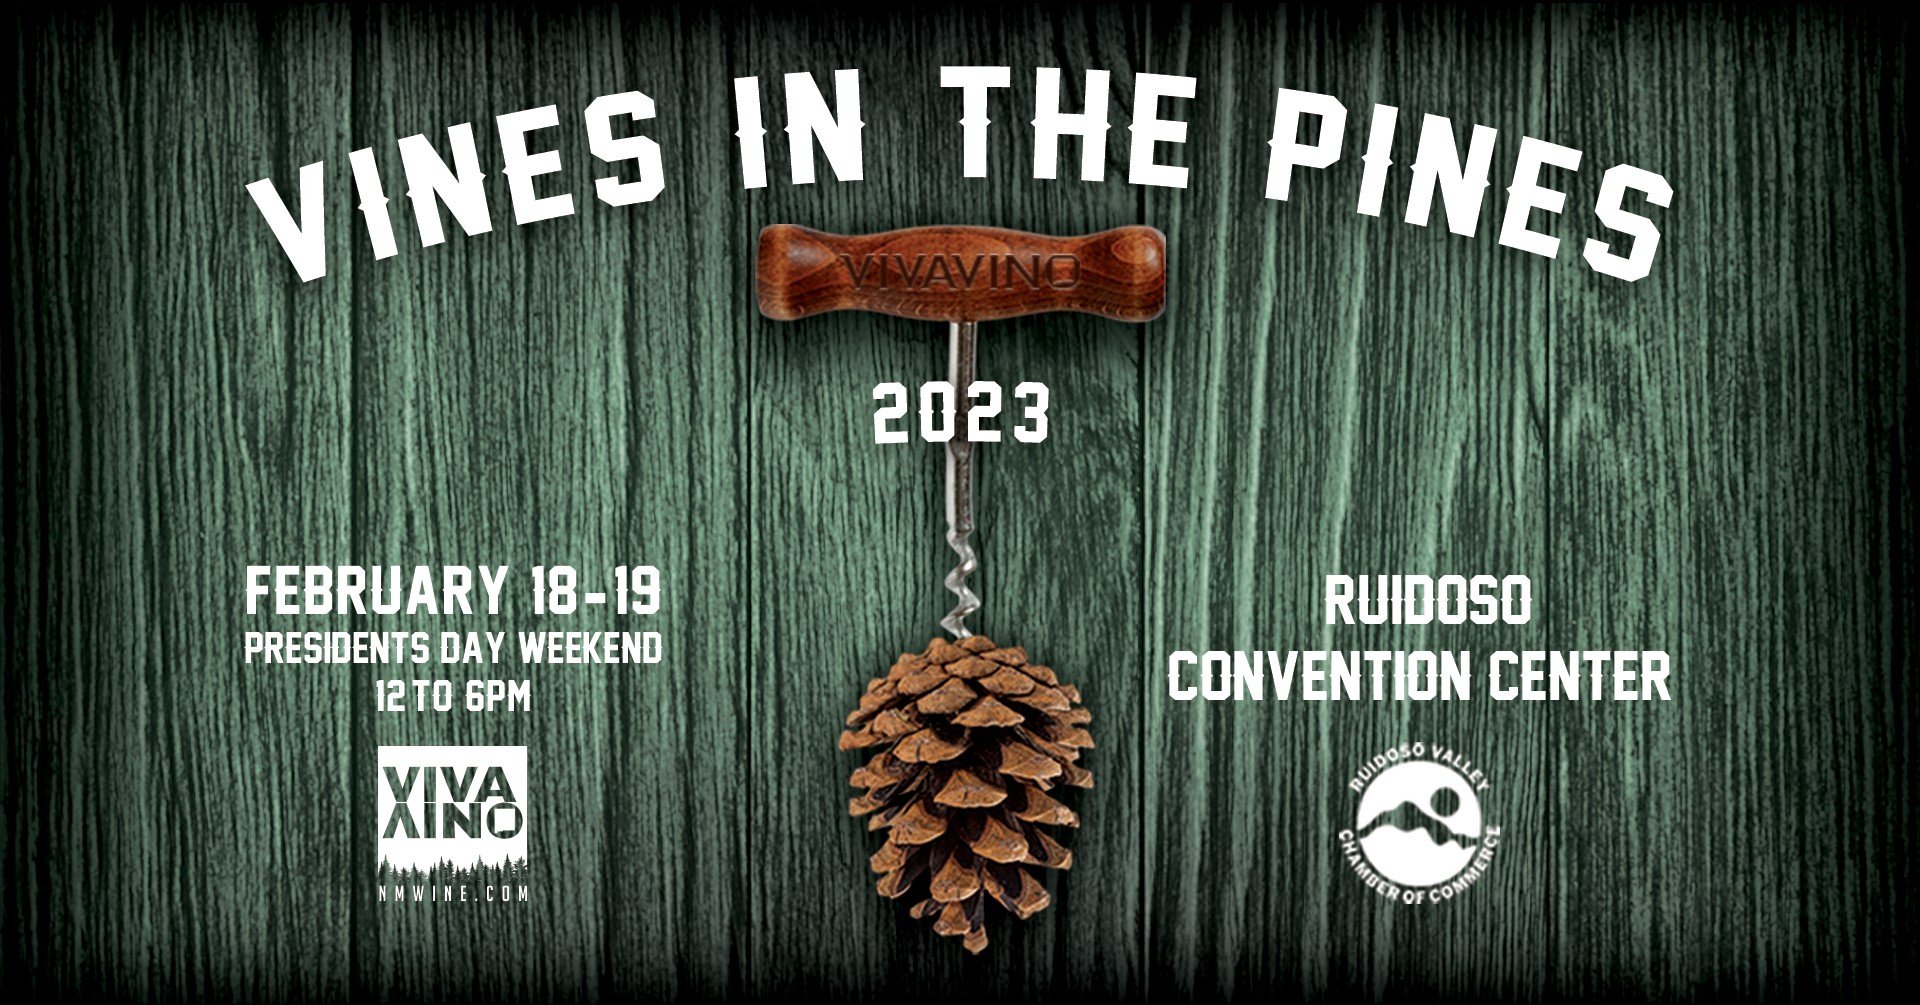 VINES IN THE PINES WINE FESTIVAL — Ruidoso Convention Center